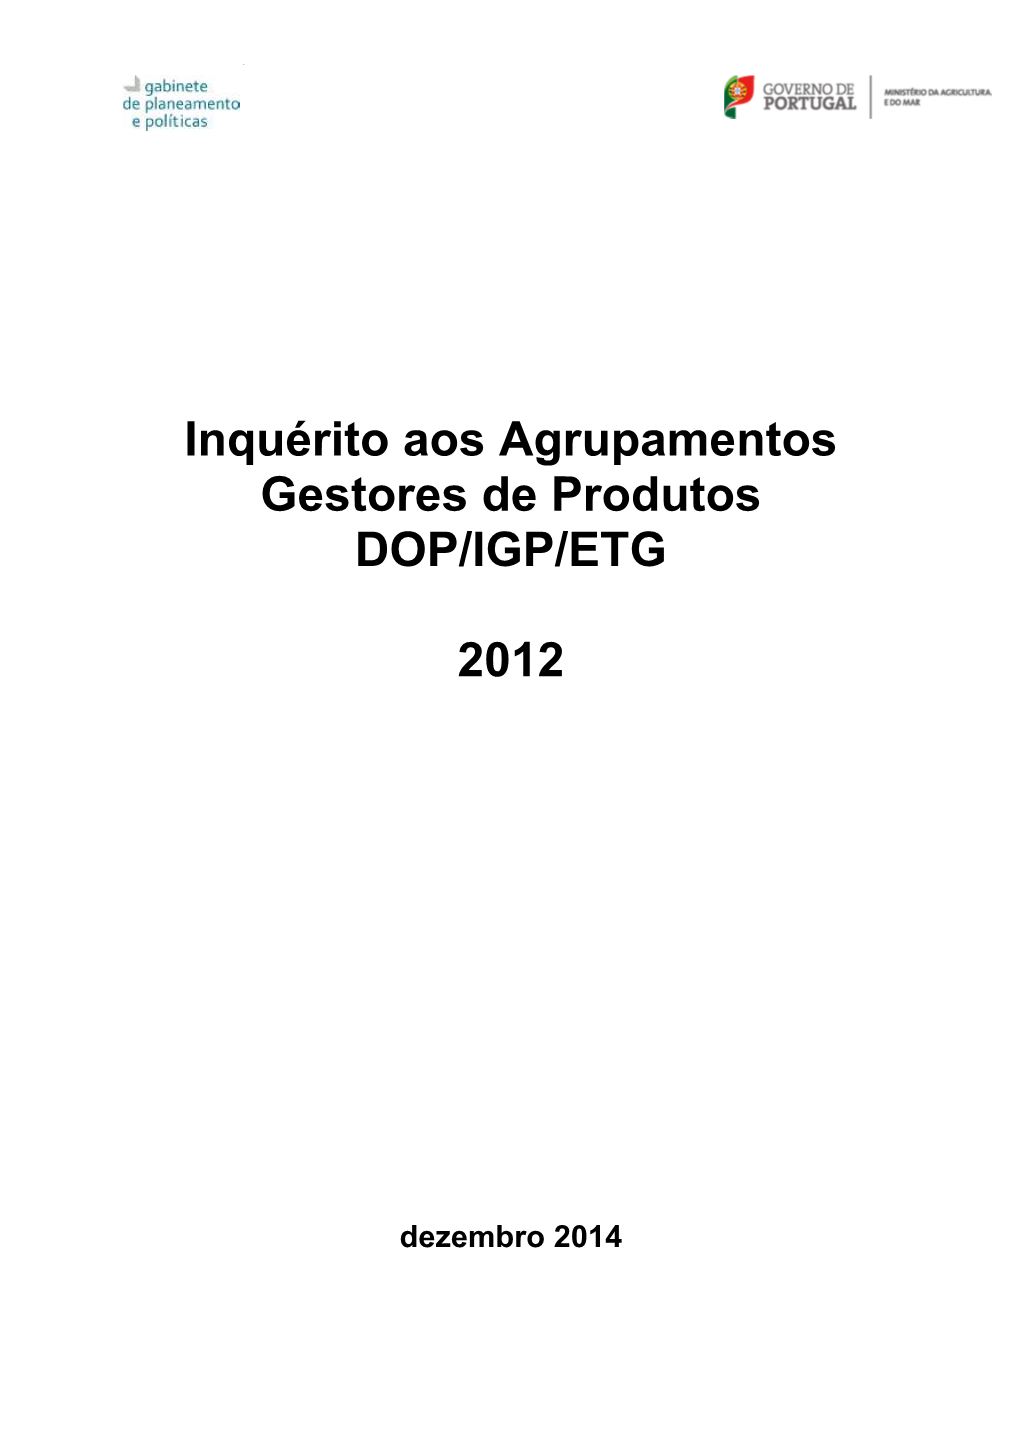 10-Relatório 2012 DOP IGP ETG Dez 2014 Corr